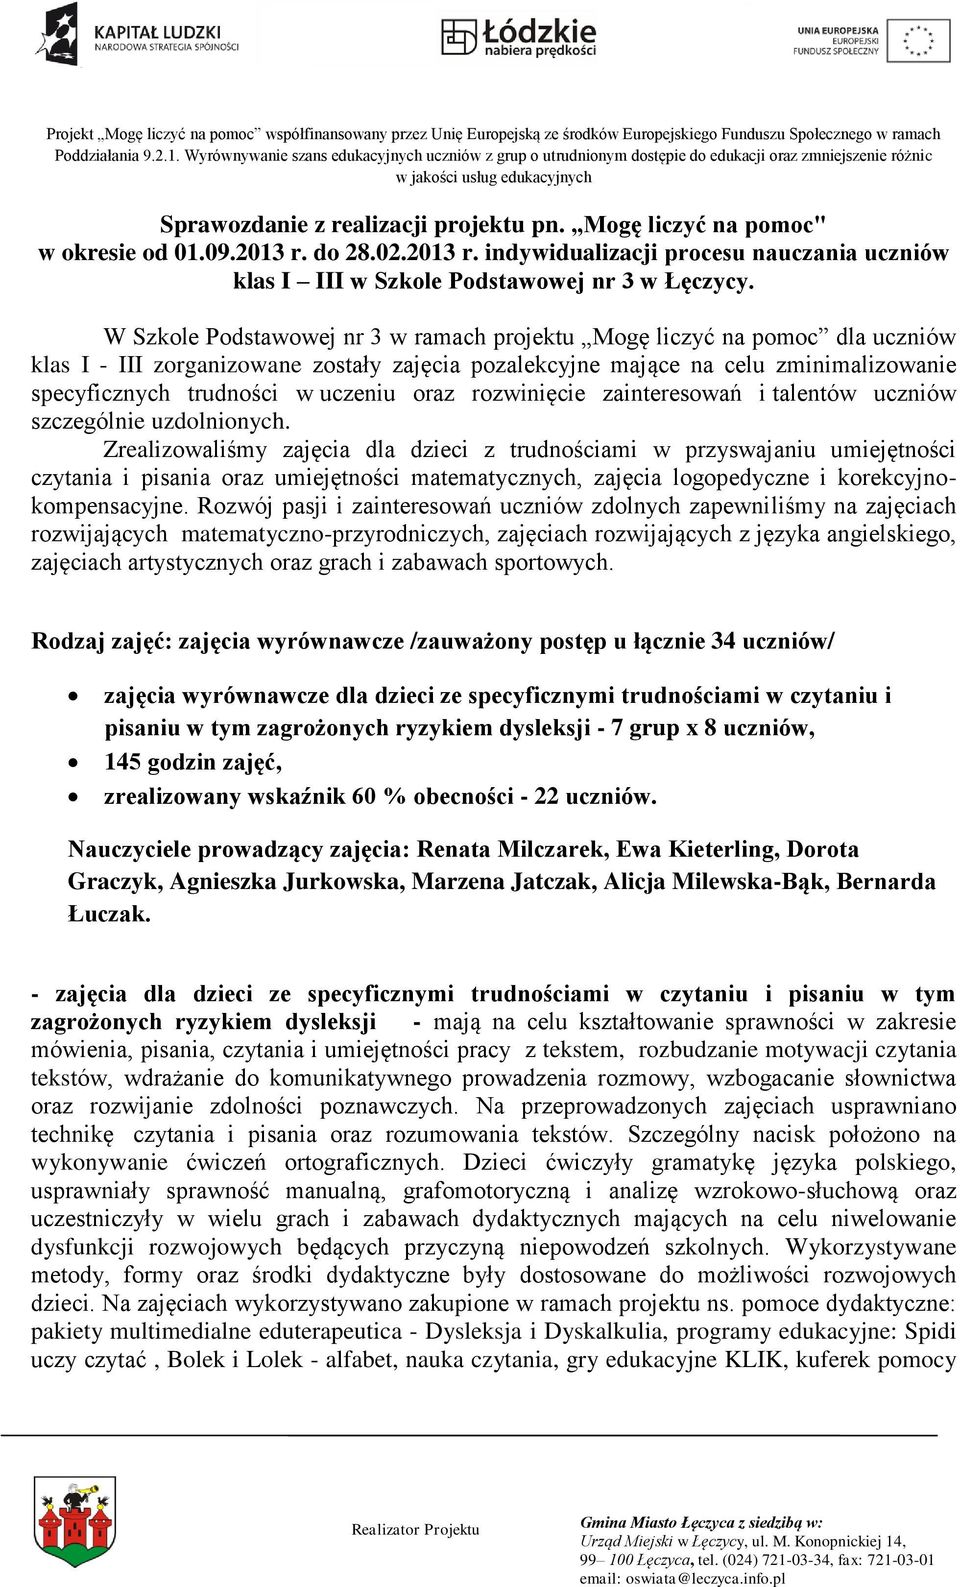 Mogę liczyć na pomoc" w okresie od 01.09.2013 r. do 28.02.2013 r. indywidualizacji procesu nauczania uczniów klas I III w Szkole Podstawowej nr 3 w Łęczycy.